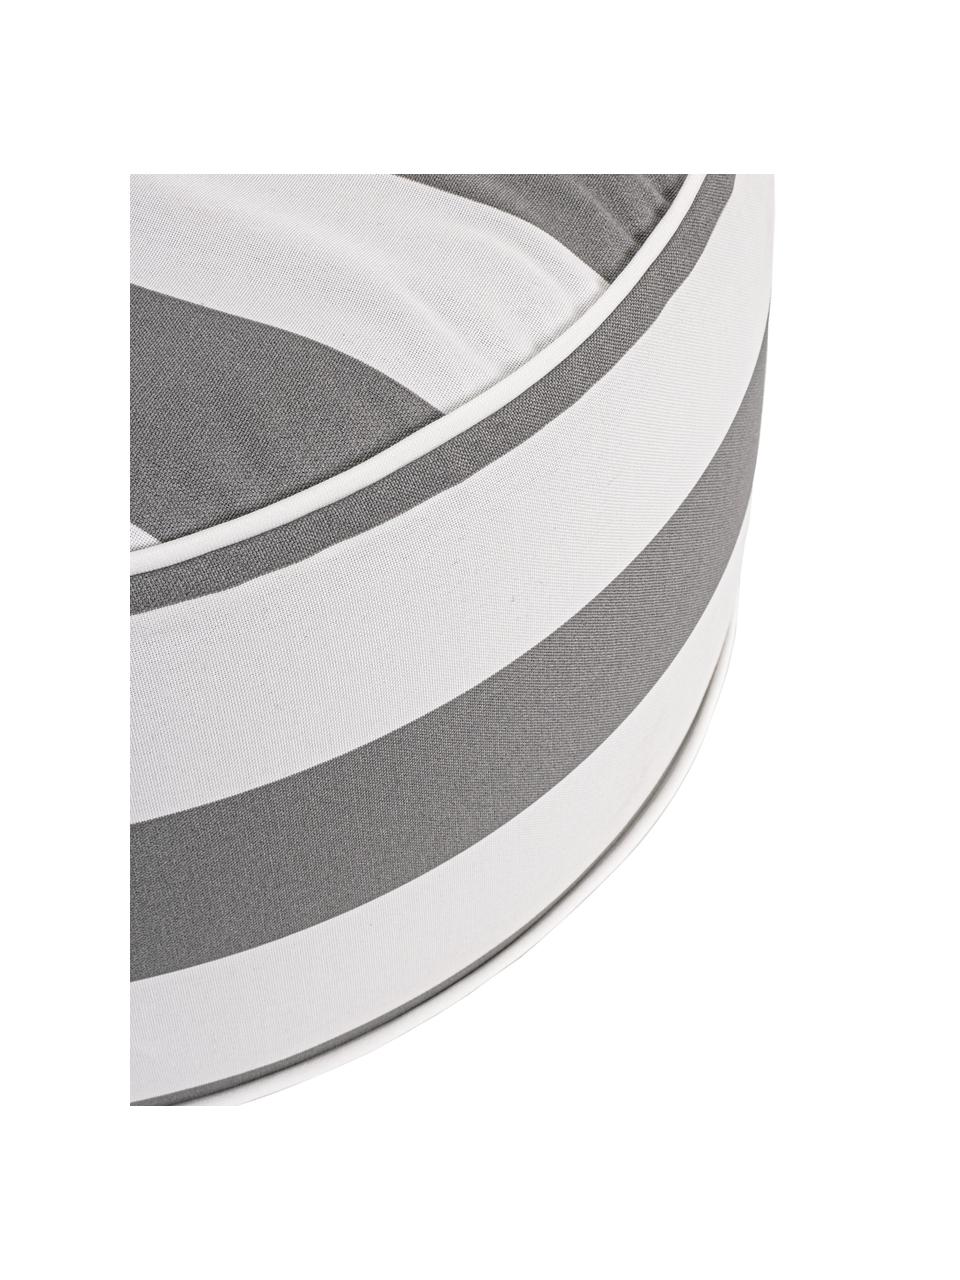 Opblaasbare buitenpoef Stripes in wit/grijs, Bekleding: 100% polyester stof (200 , Wit, grijs, Ø 53 x H 23 cm